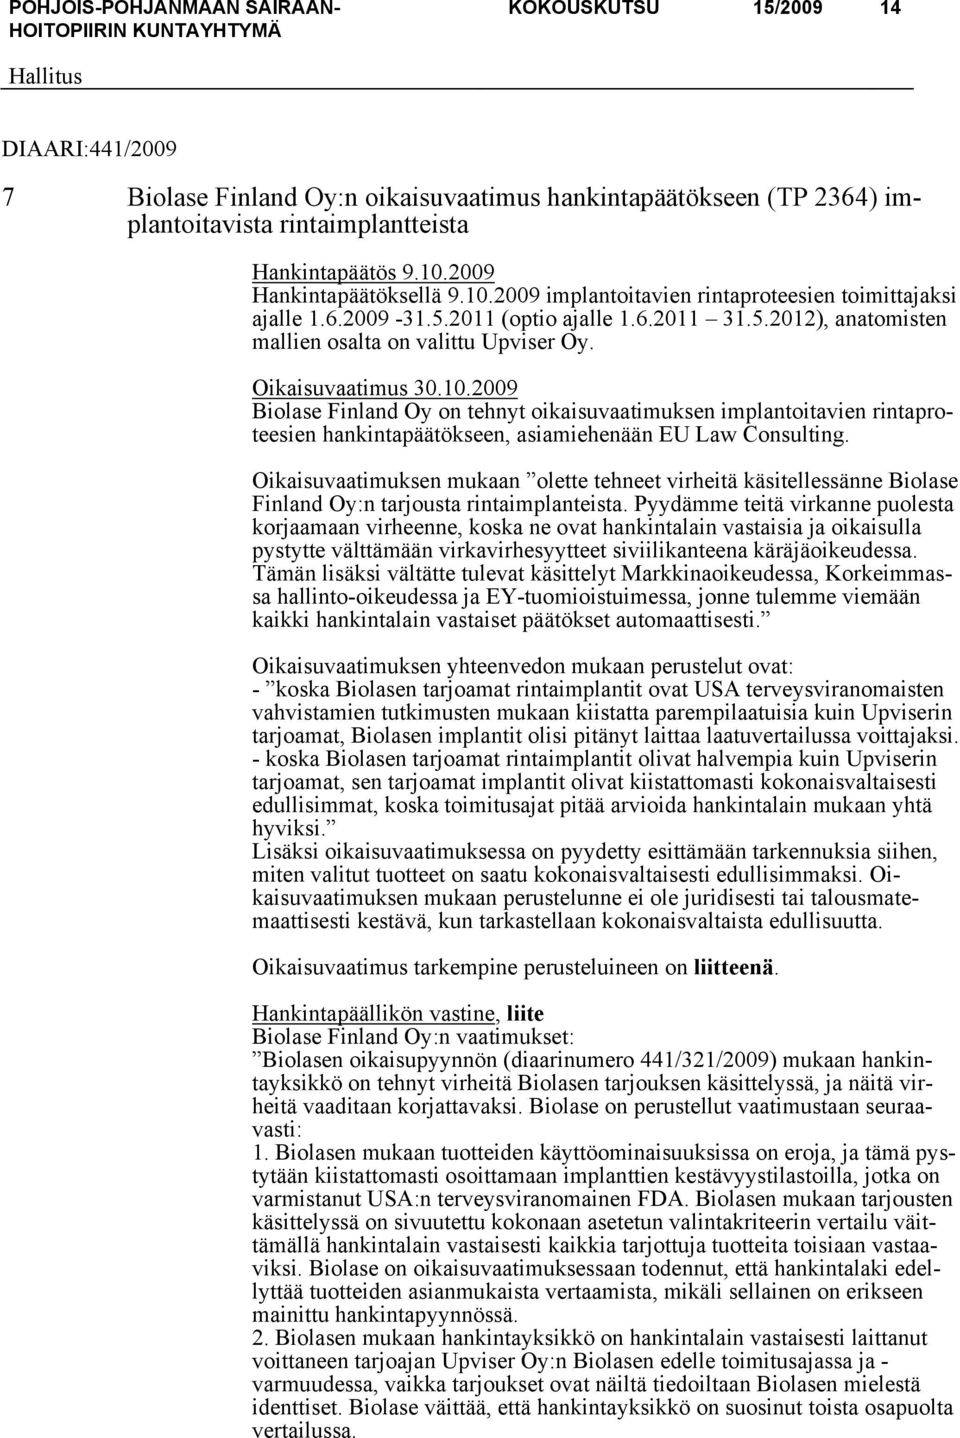 Oikaisuvaatimus 30.10.2009 Biolase Finland Oy on tehnyt oikaisuvaatimuksen implantoitavien rintaproteesien hankintapäätökseen, asiamiehenään EU Law Consulting.